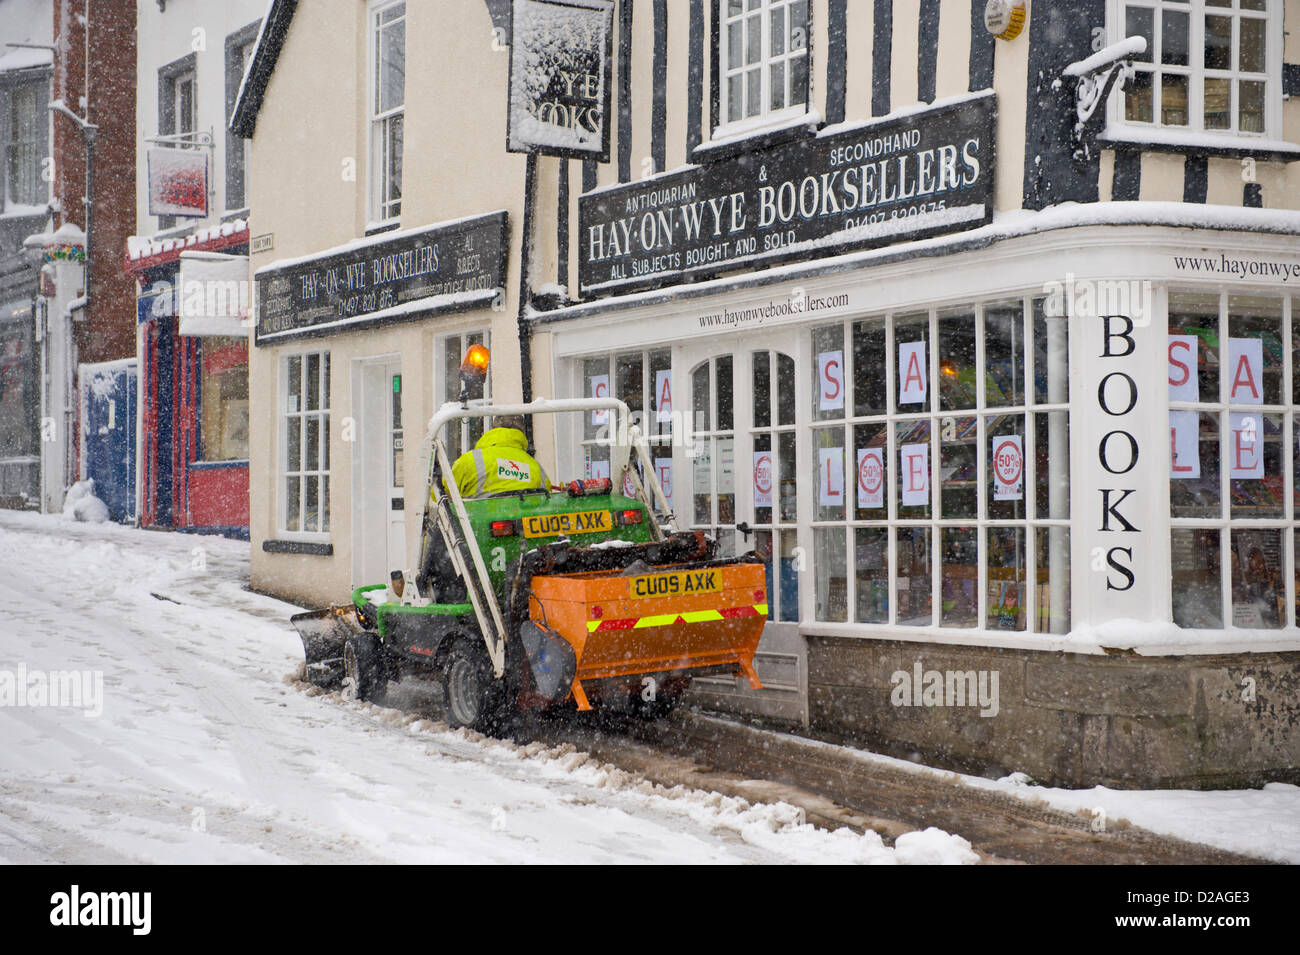 La contea di Powys County Council lavoratore utilizzando mini spazzaneve per gritting e sgombero della neve da strade e marciapiedi dopo la nevicata. Hay-on-Wye Powys Wales UK. 18 gennaio 2013. Credito: Jeff Morgan/Alamy Live News Foto Stock